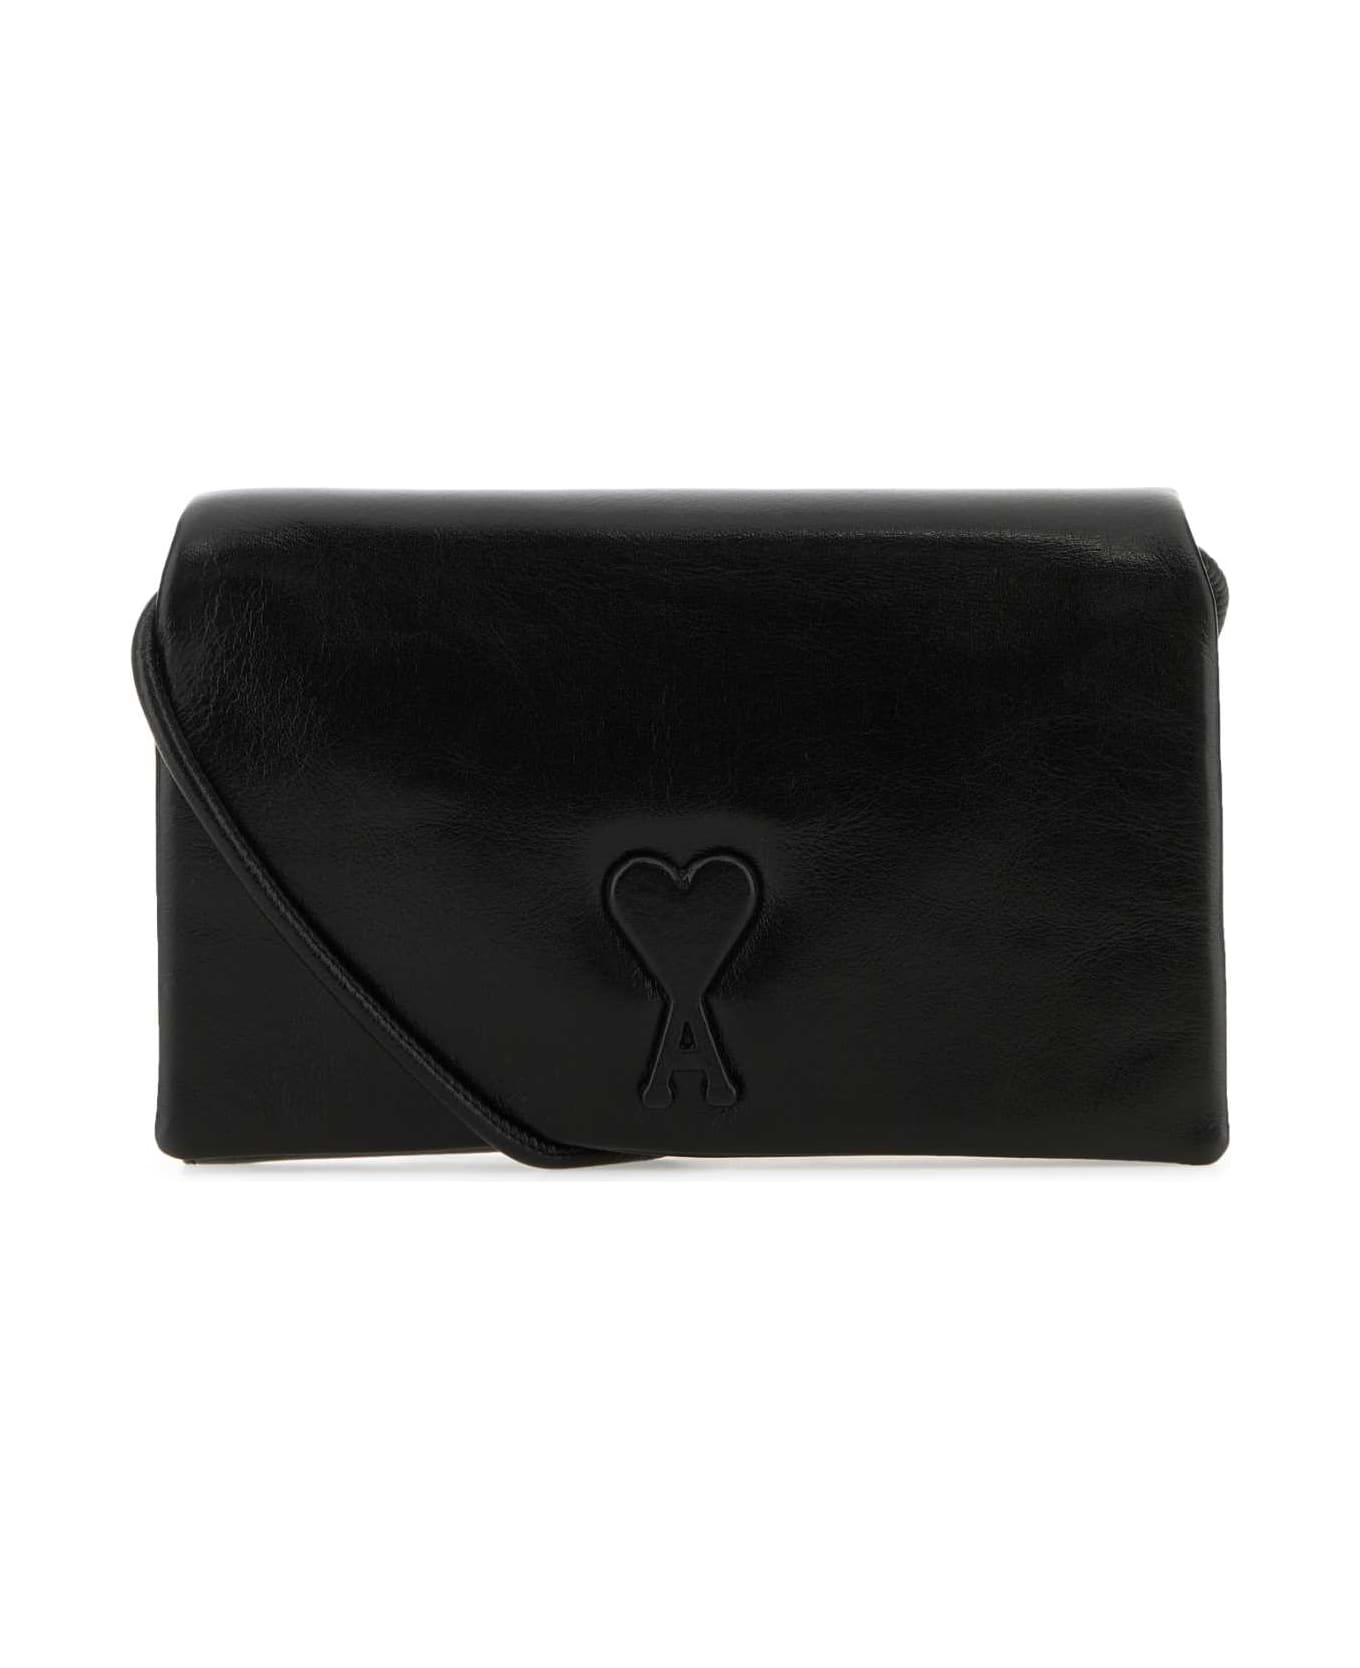 Ami Alexandre Mattiussi Black Leather Voulez-vous Wallet - Black 財布